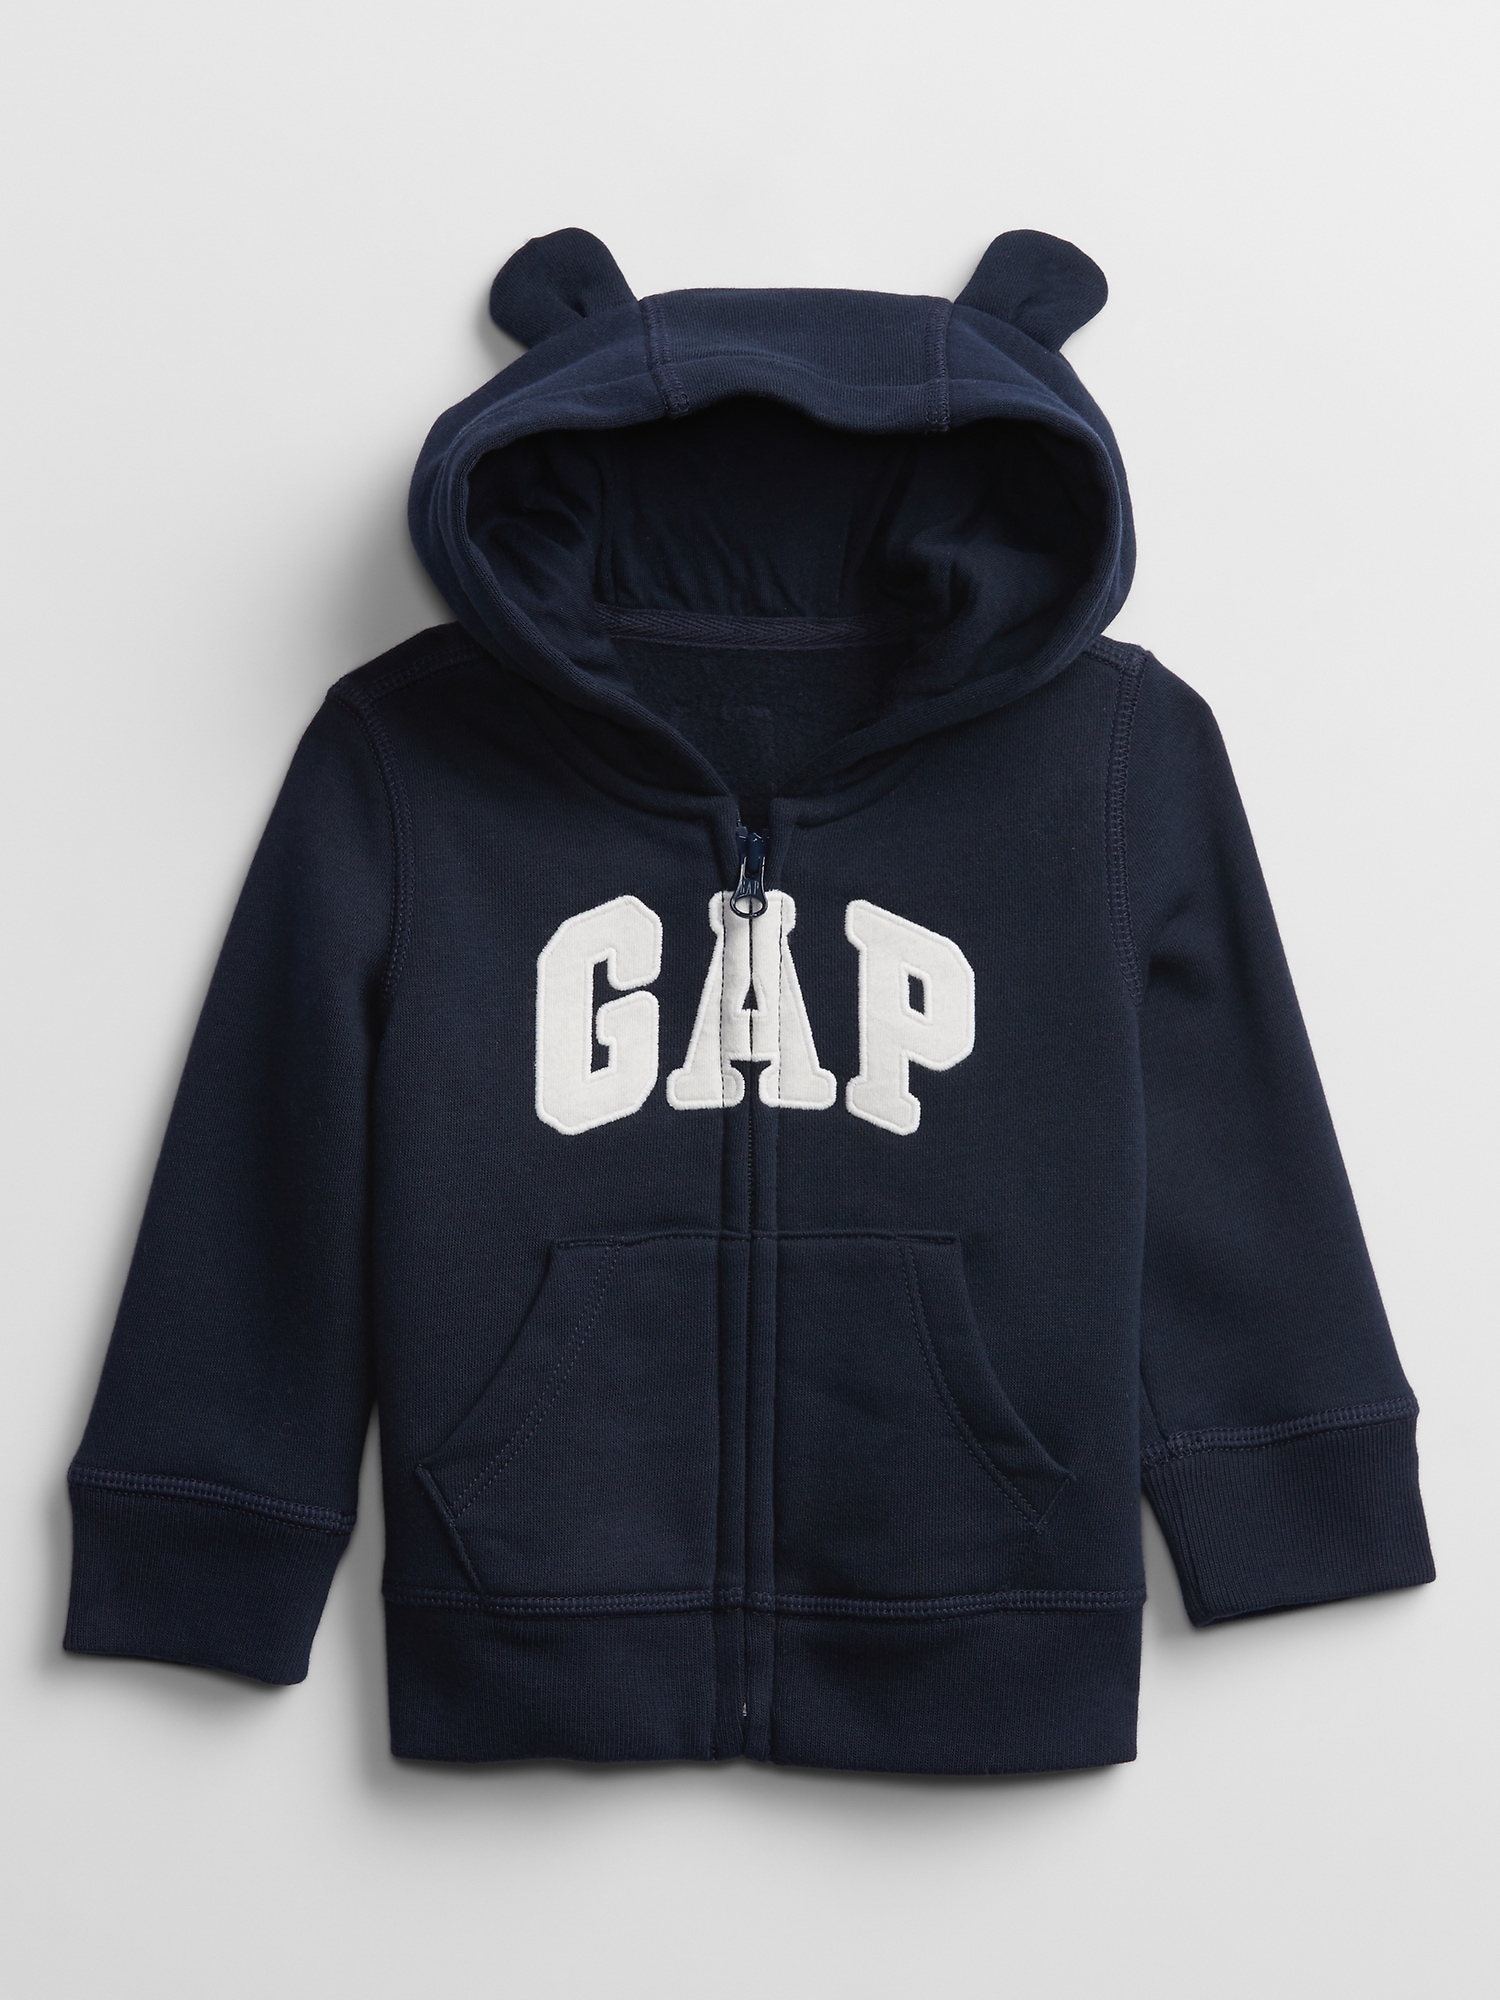 Baby Gap Logo Hoodie Sweatshirt | Gap Factory